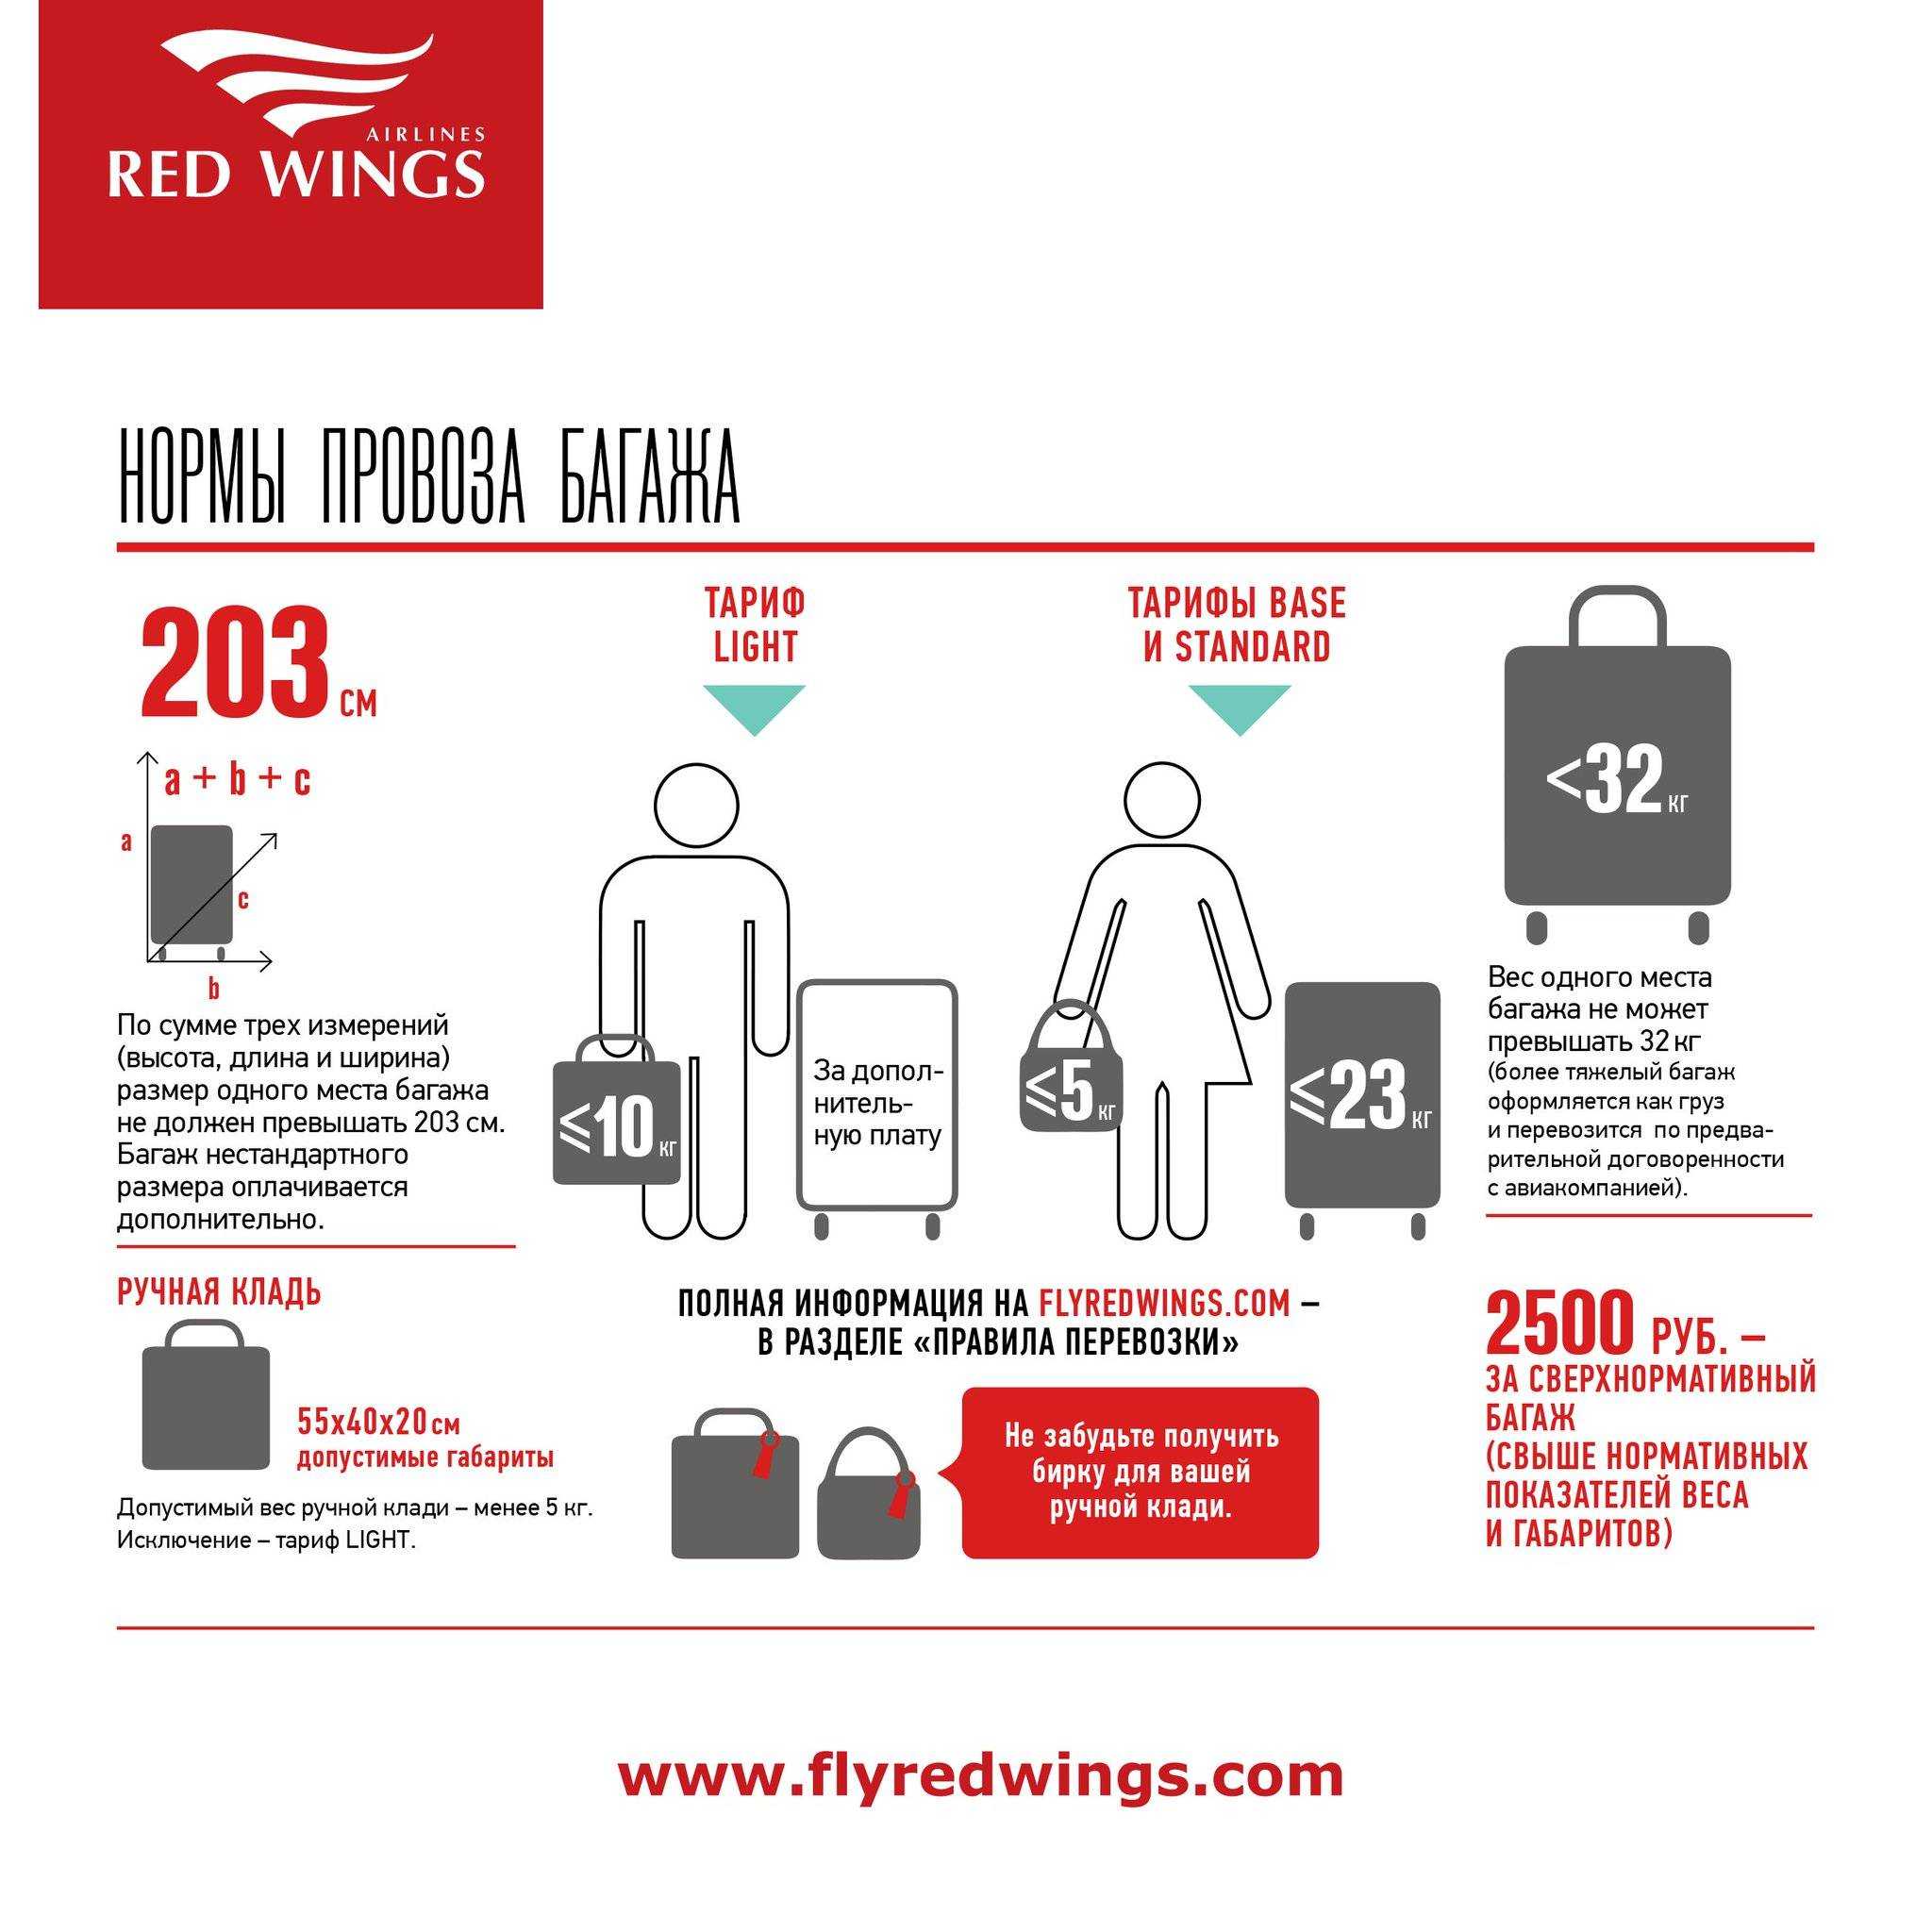 Ручная кладь турецкие авиалинии: нормы провоза багажа в 2021 году